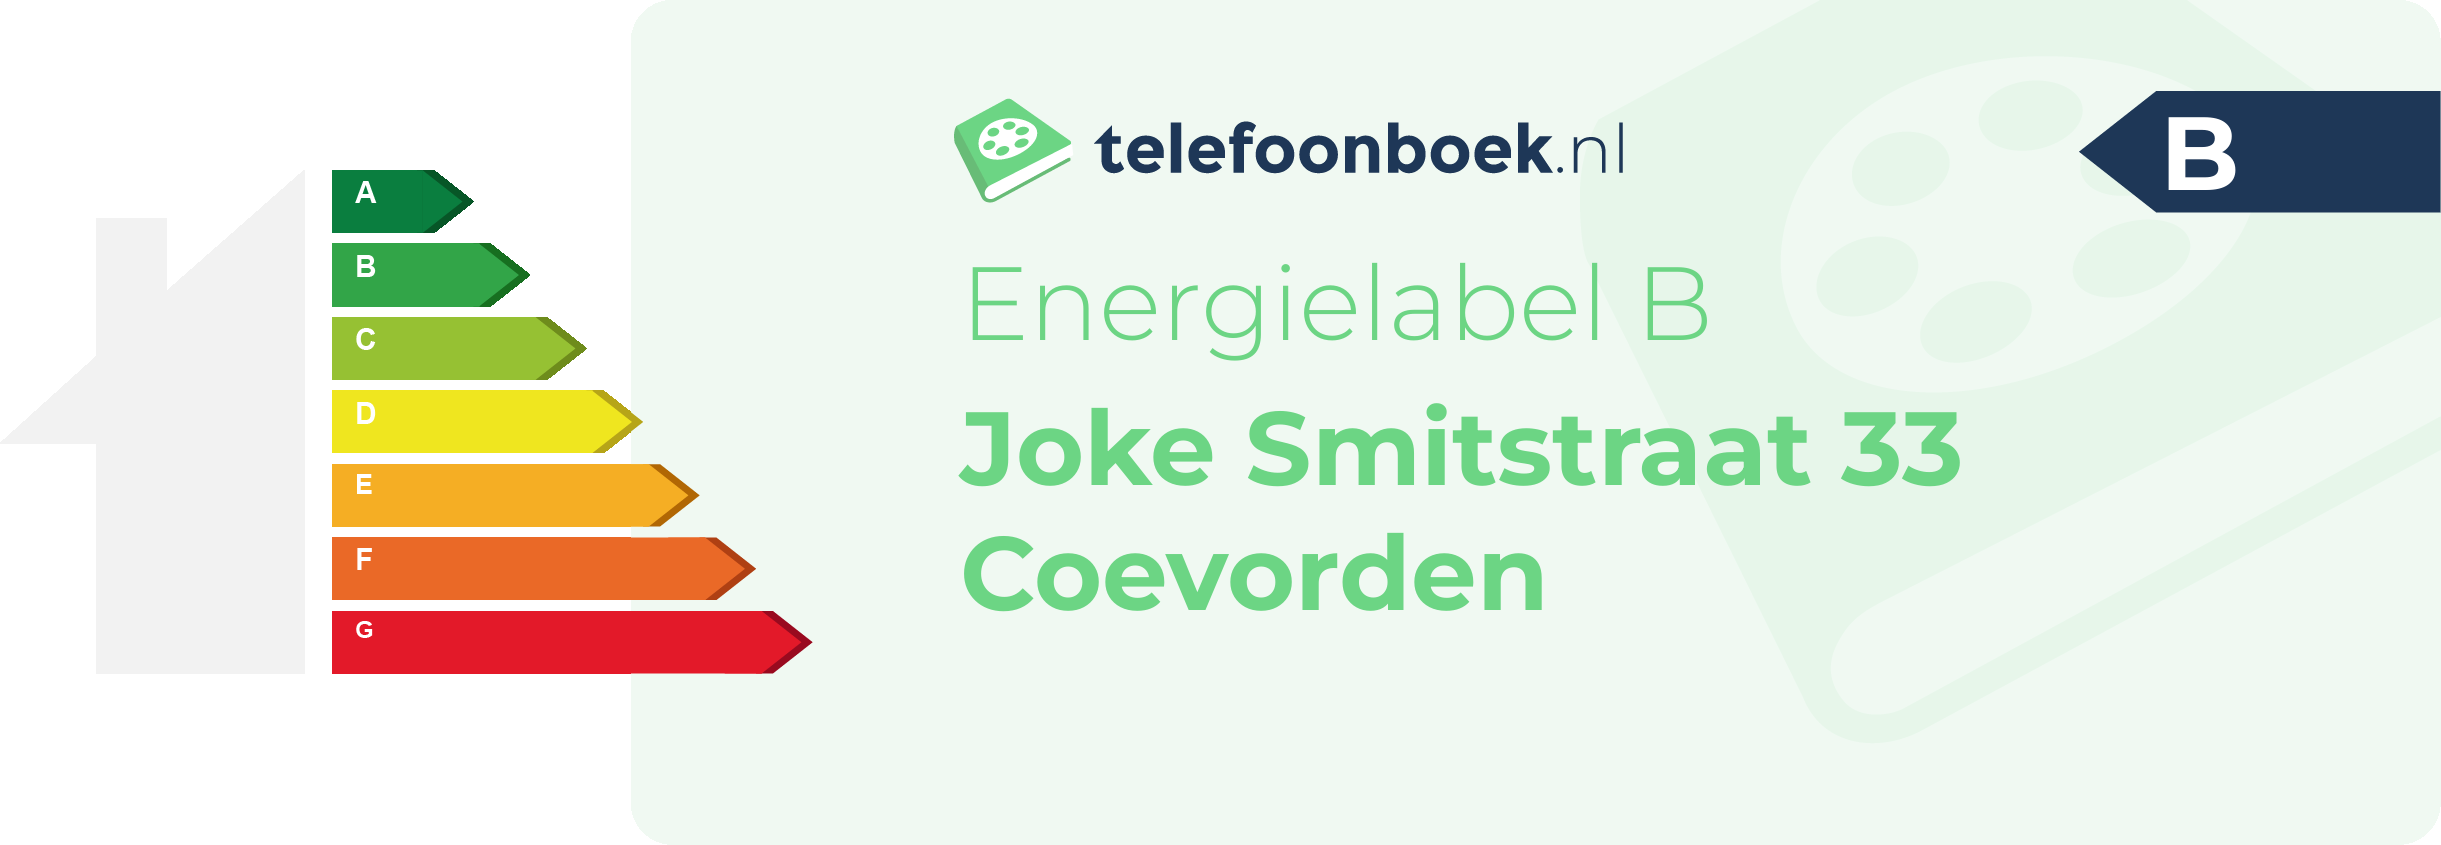 Energielabel Joke Smitstraat 33 Coevorden